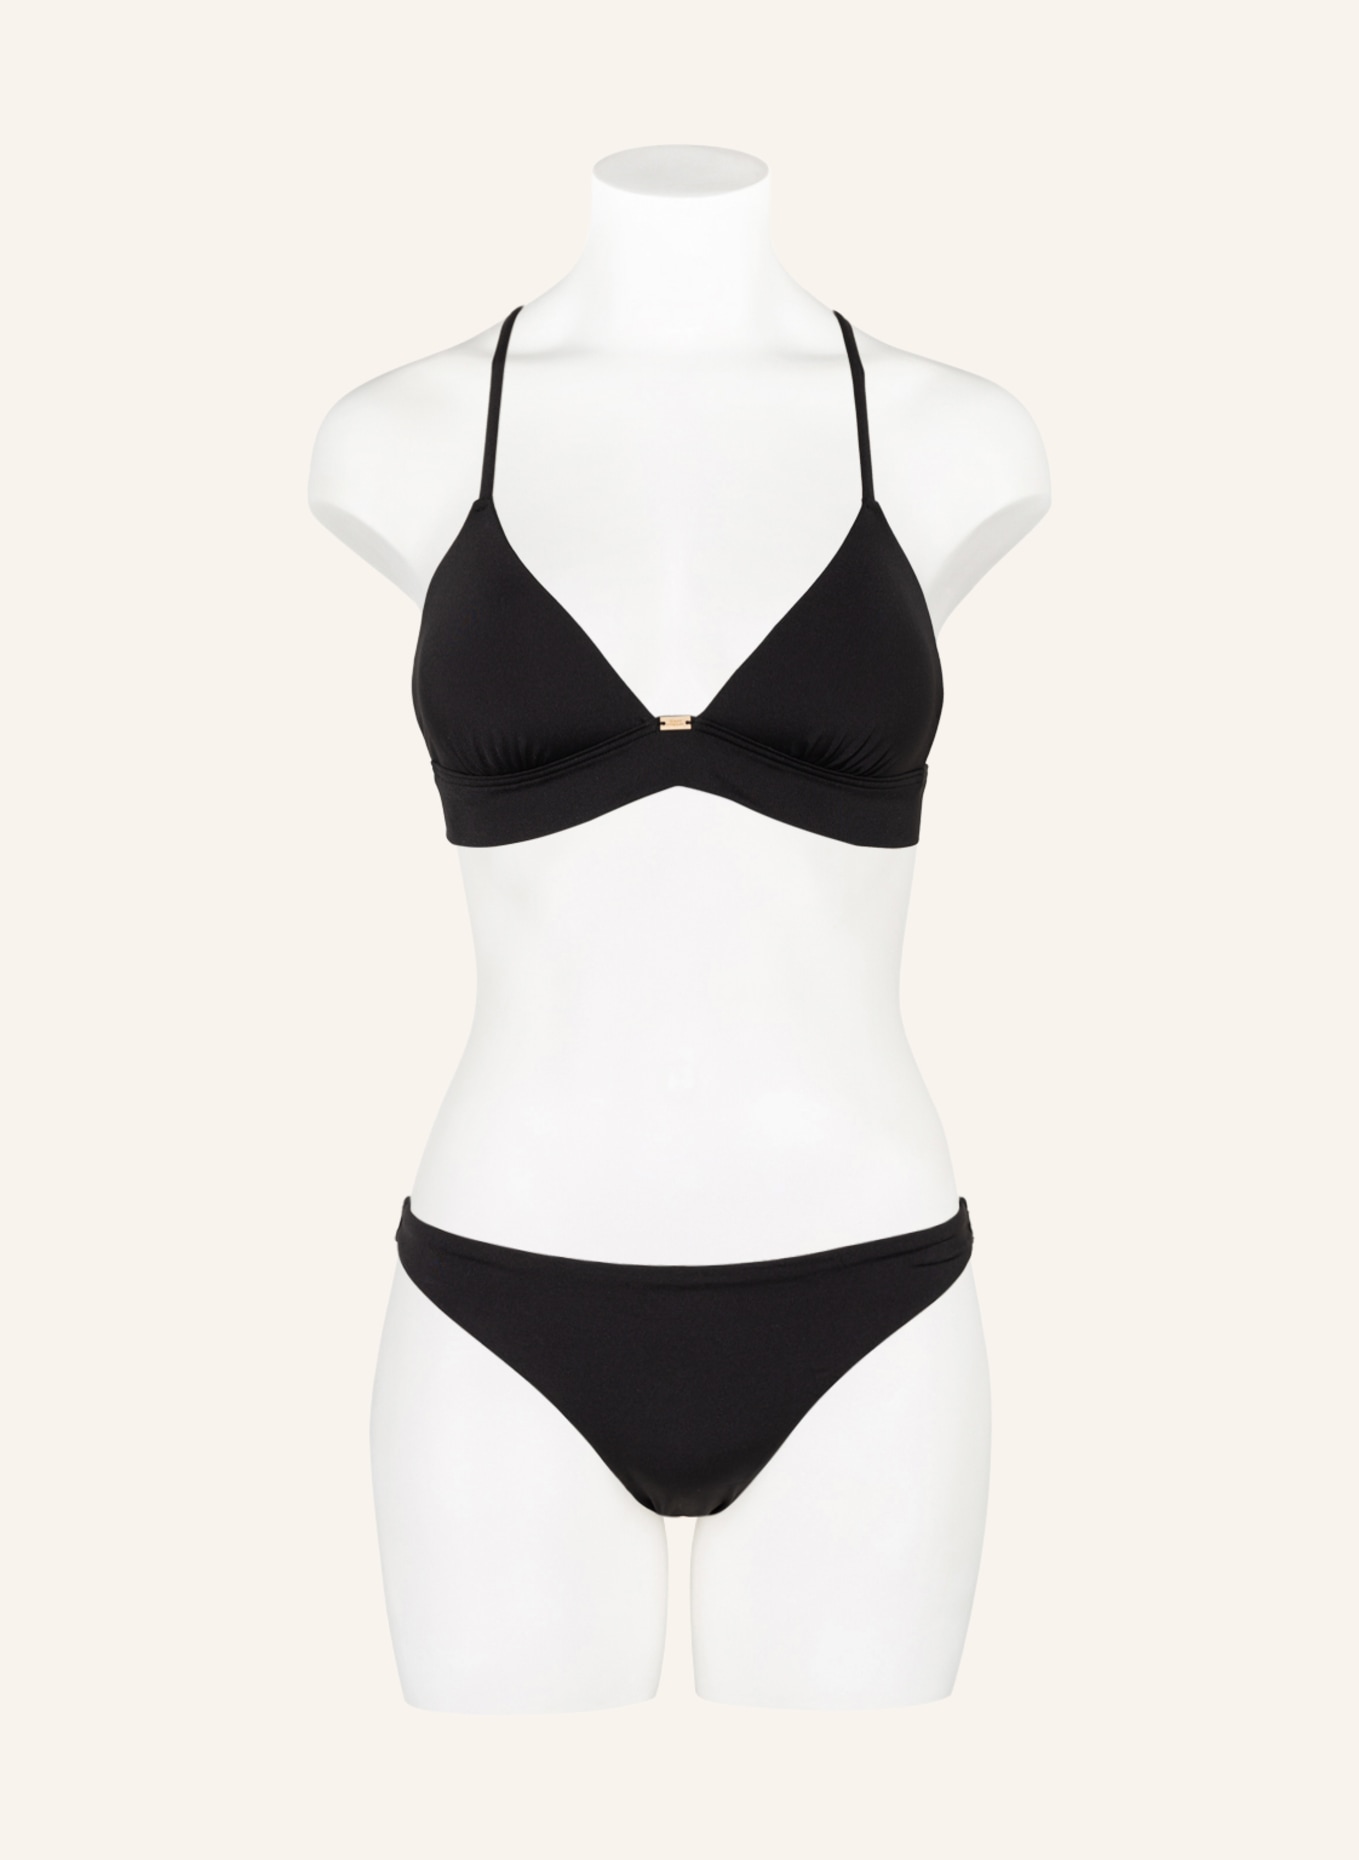 SAM FRIDAY Bralette-Bikini-Top DRIFT, Farbe: SCHWARZ (Bild 2)